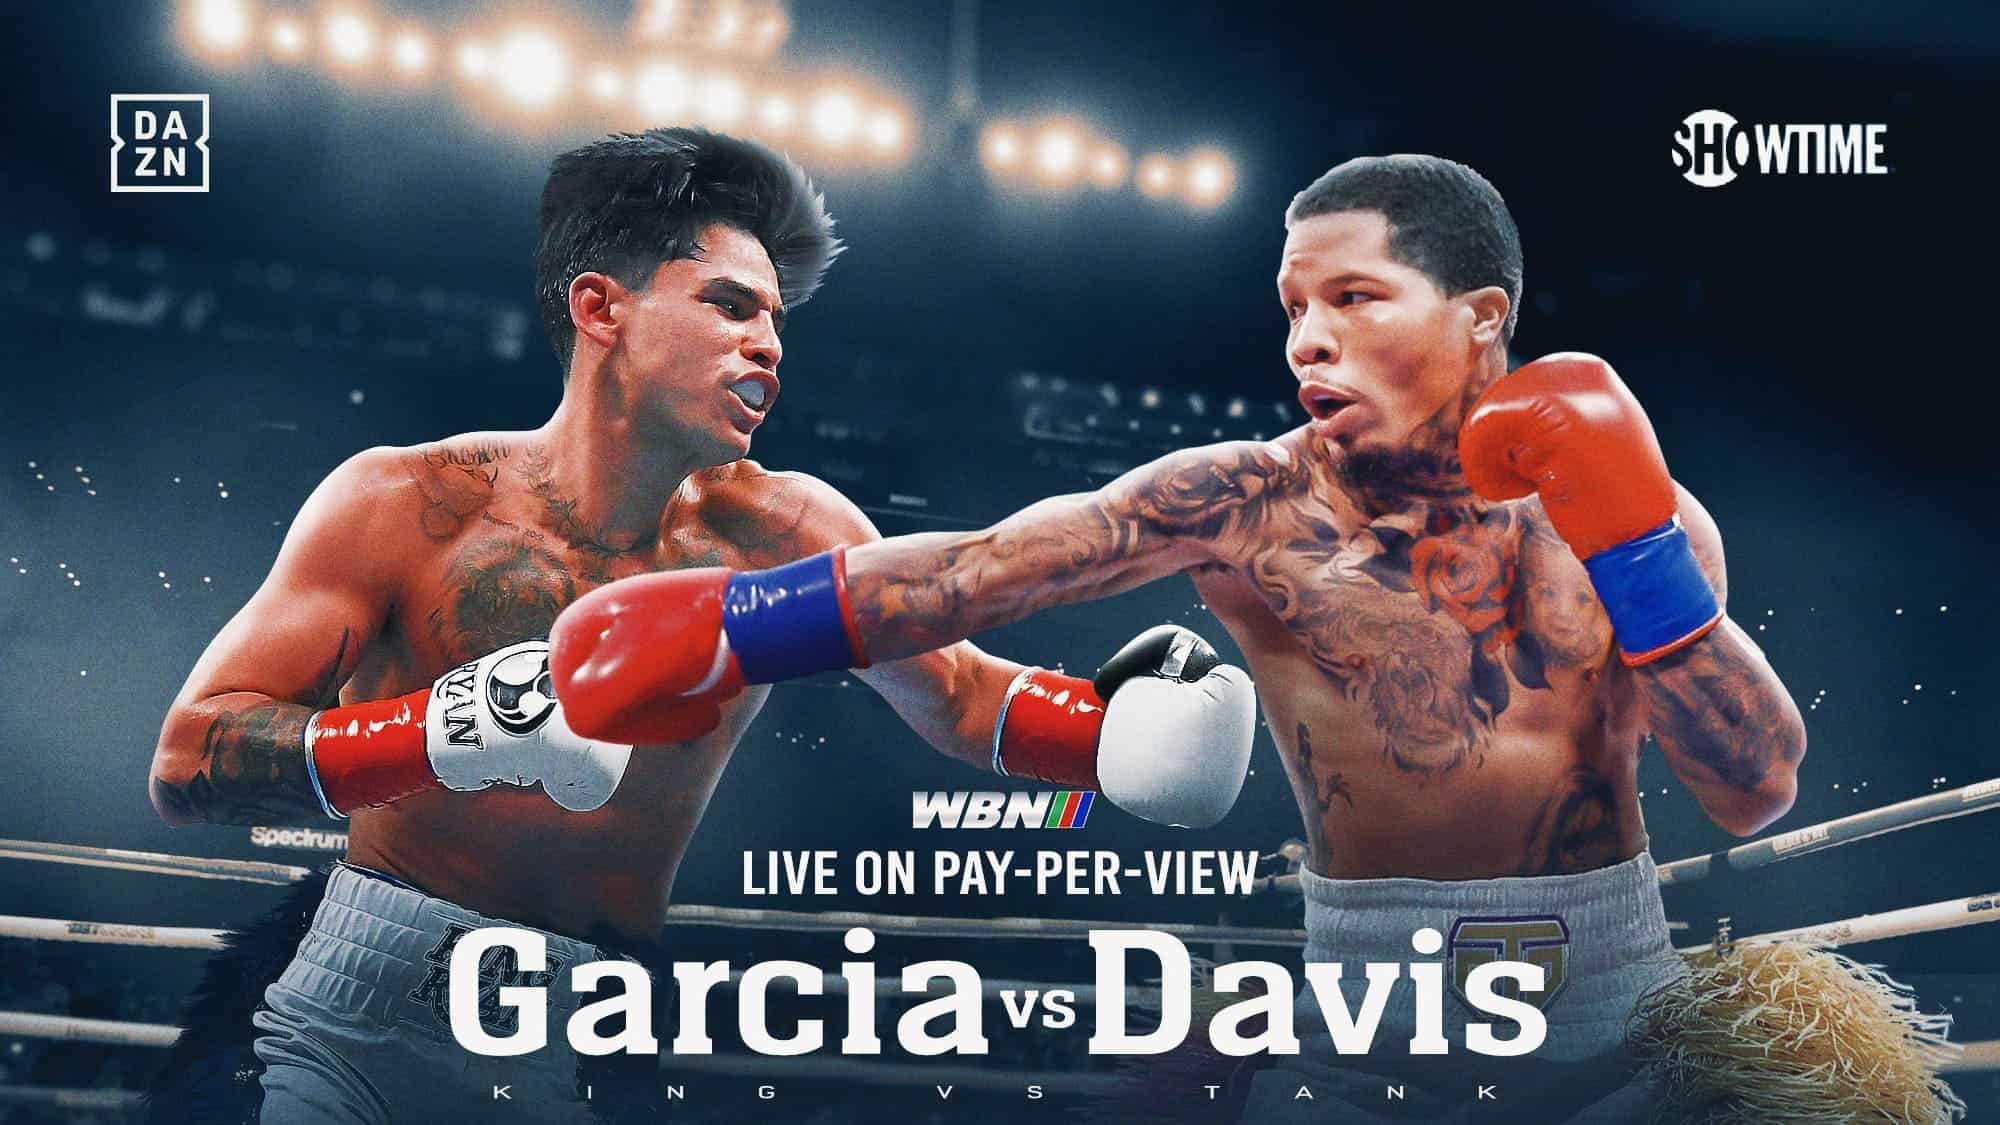 Di Negara Mana Anda Bisa Streaming Tank Davis vs Garcia PPV Live?  Periksa Harga PPV, Waktu Mulai, dan Lebih Detail